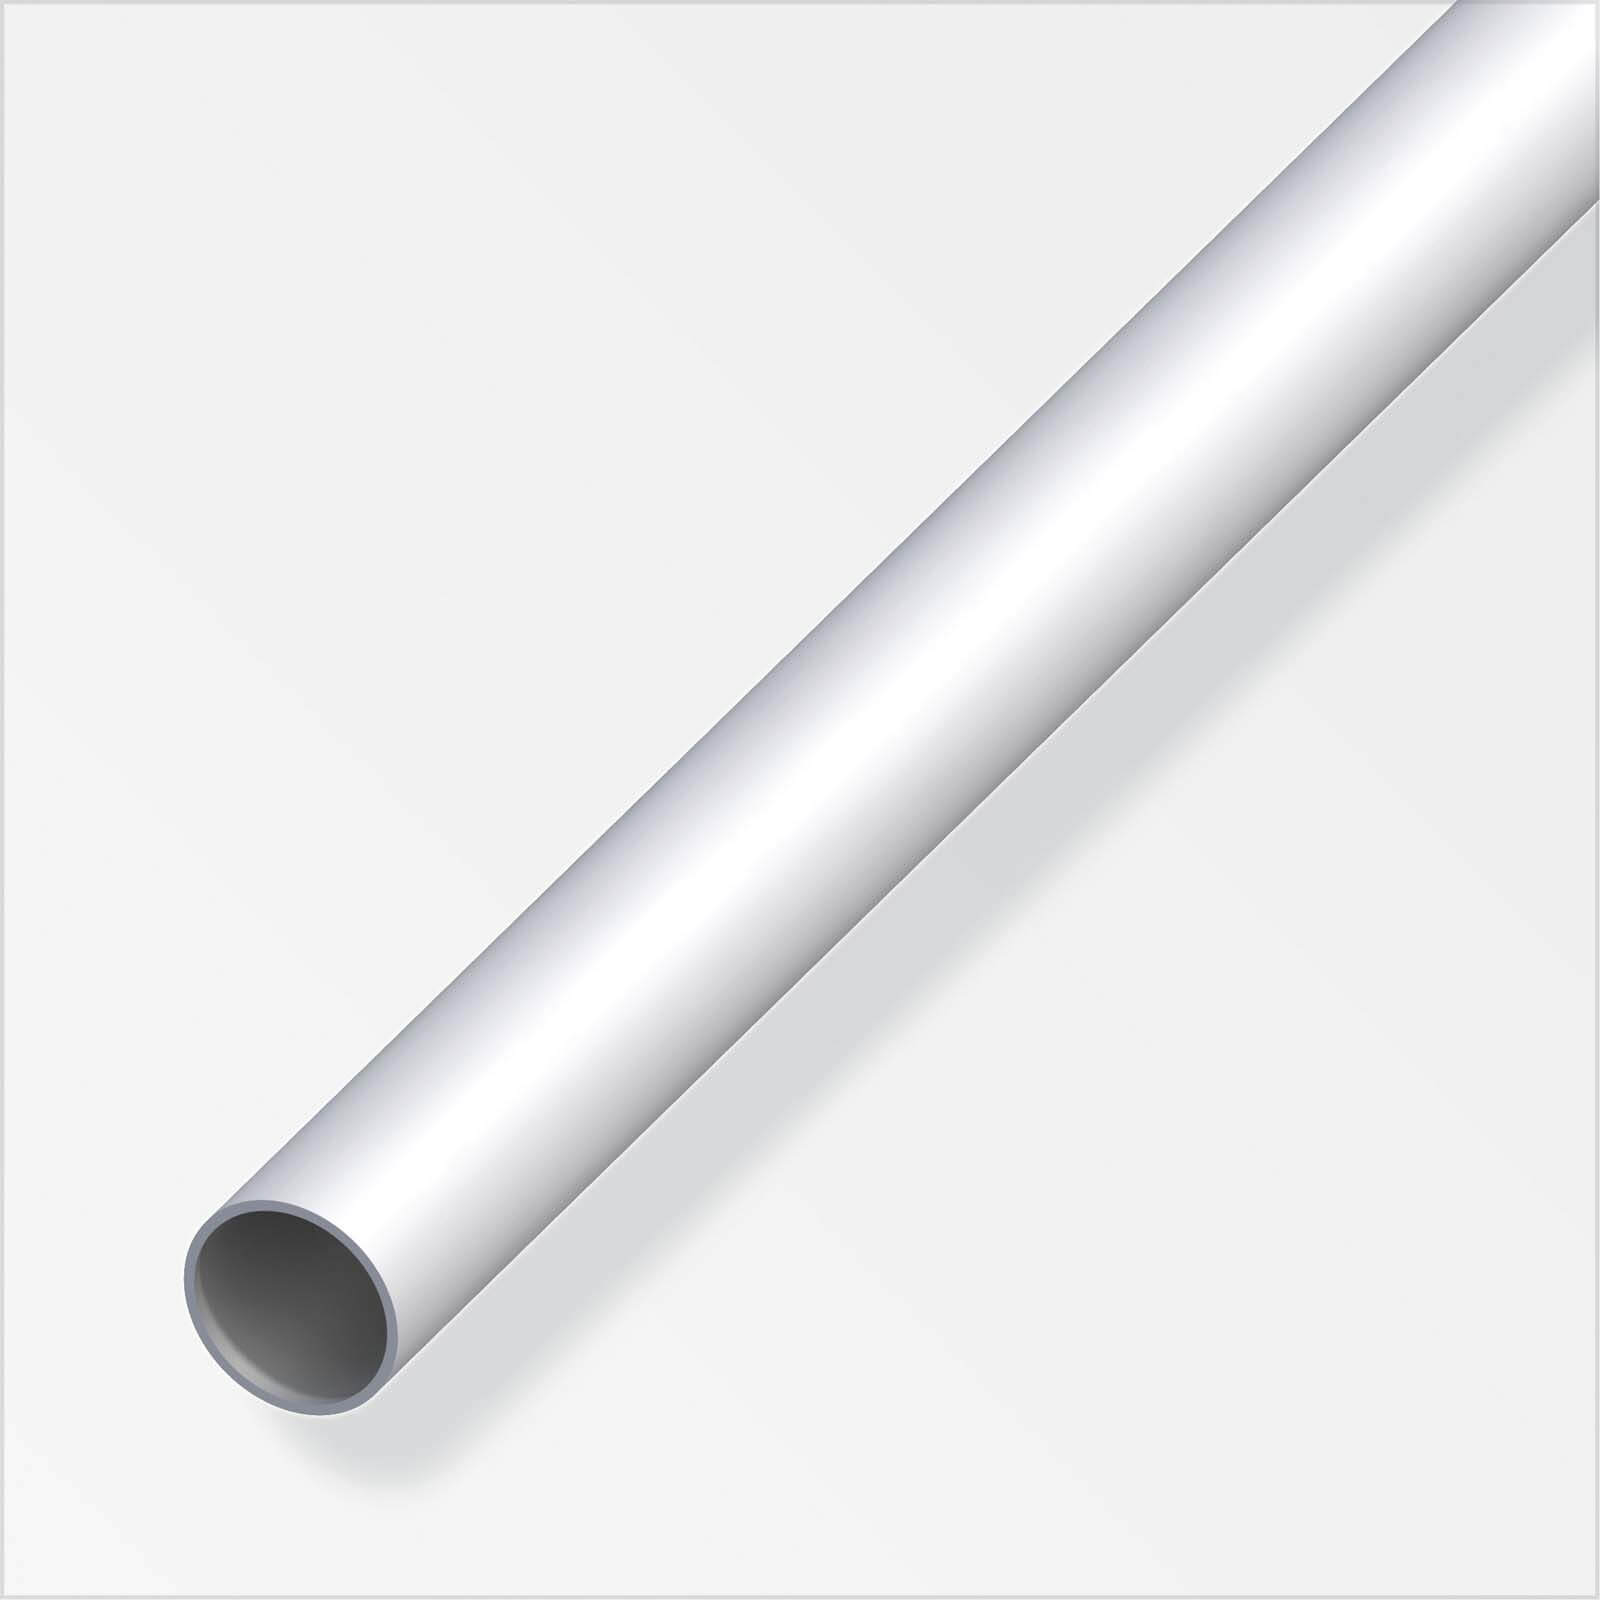 Anodised Aluminium Round Tube Profile - 1m x 10 x 10mm